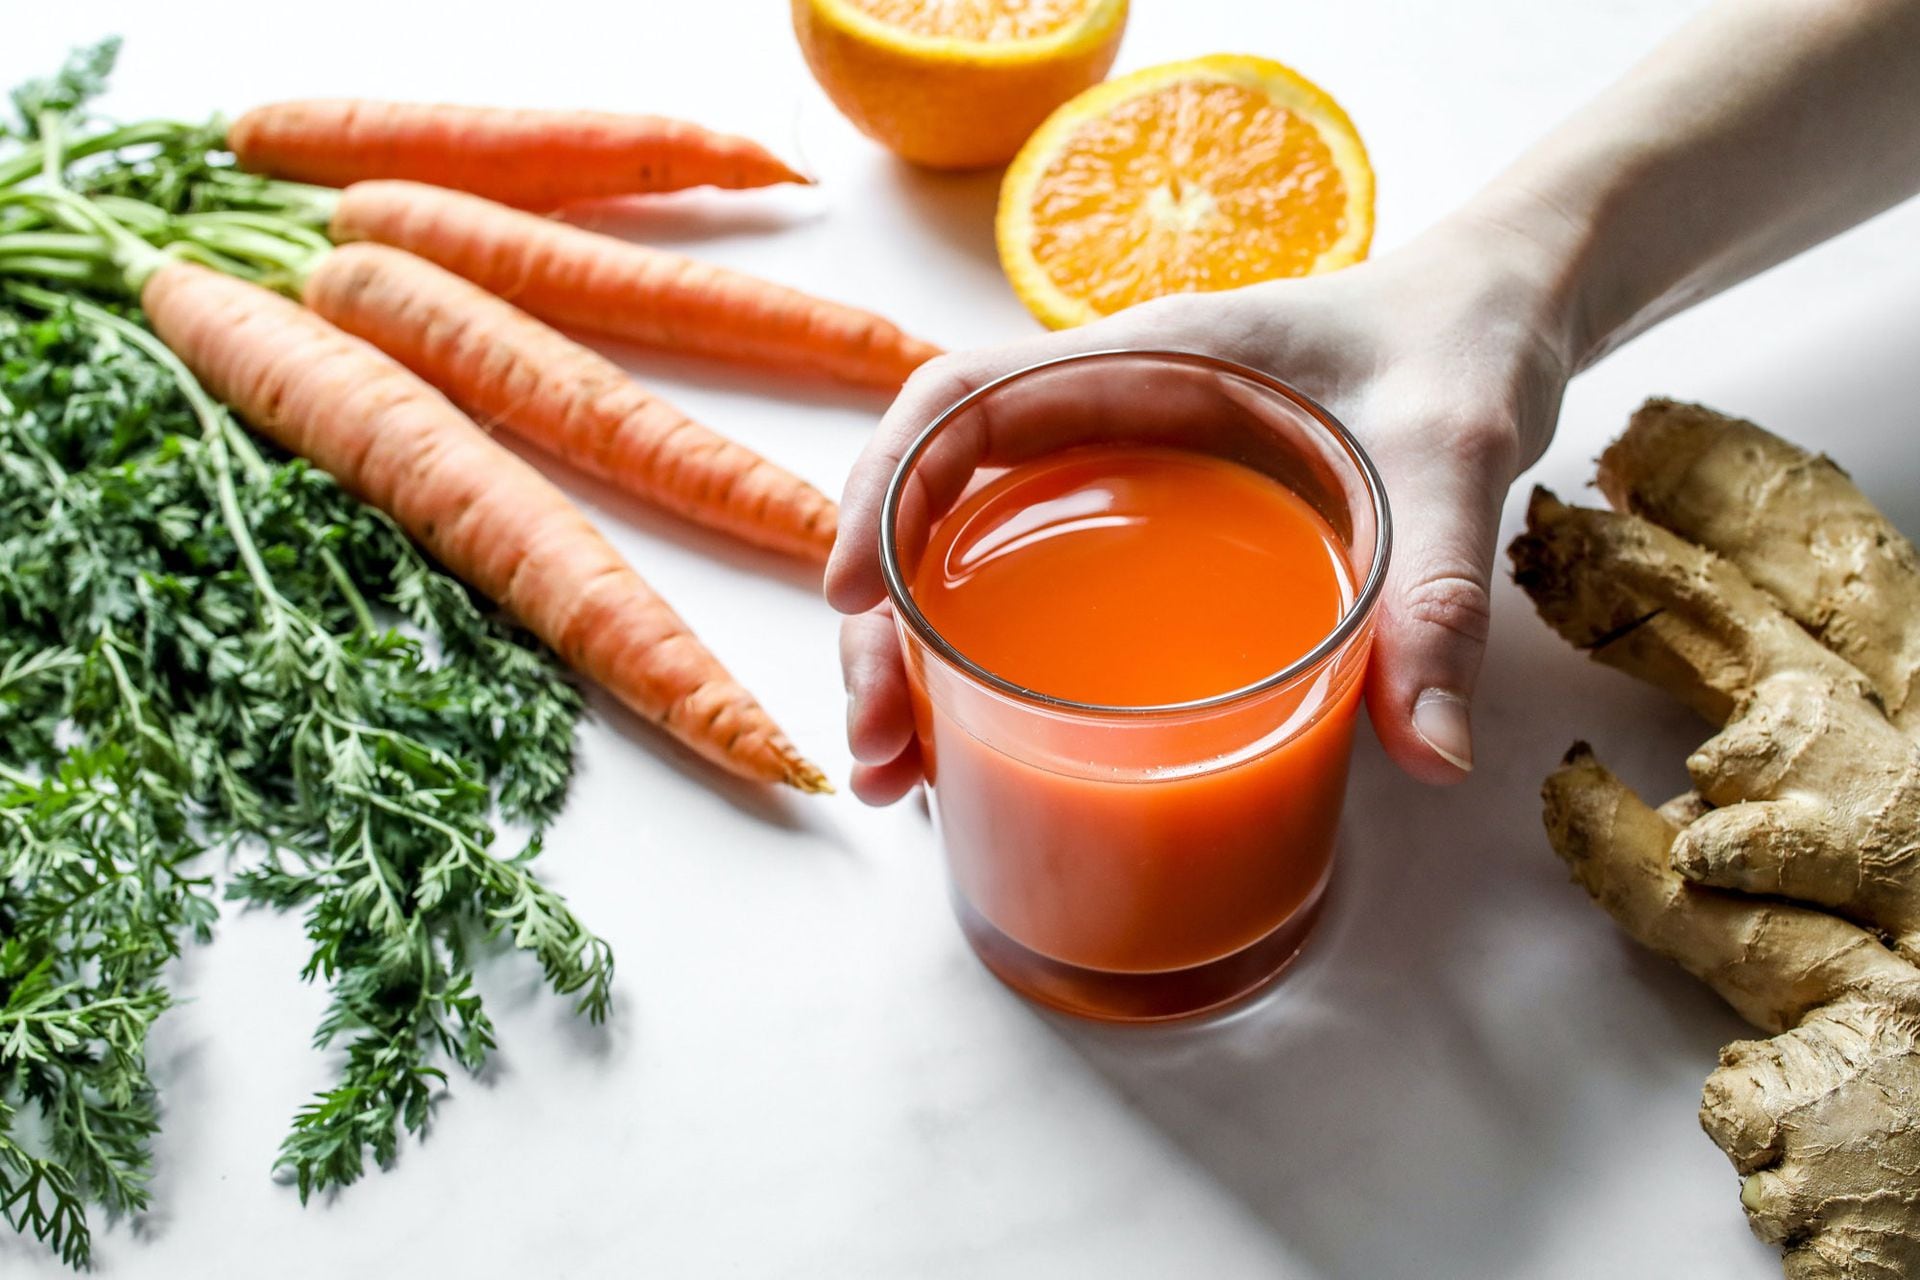 El jugo de zanahoria libera más nutrientes que la zanahoria cocida. Combinada con naranja es una delicia.